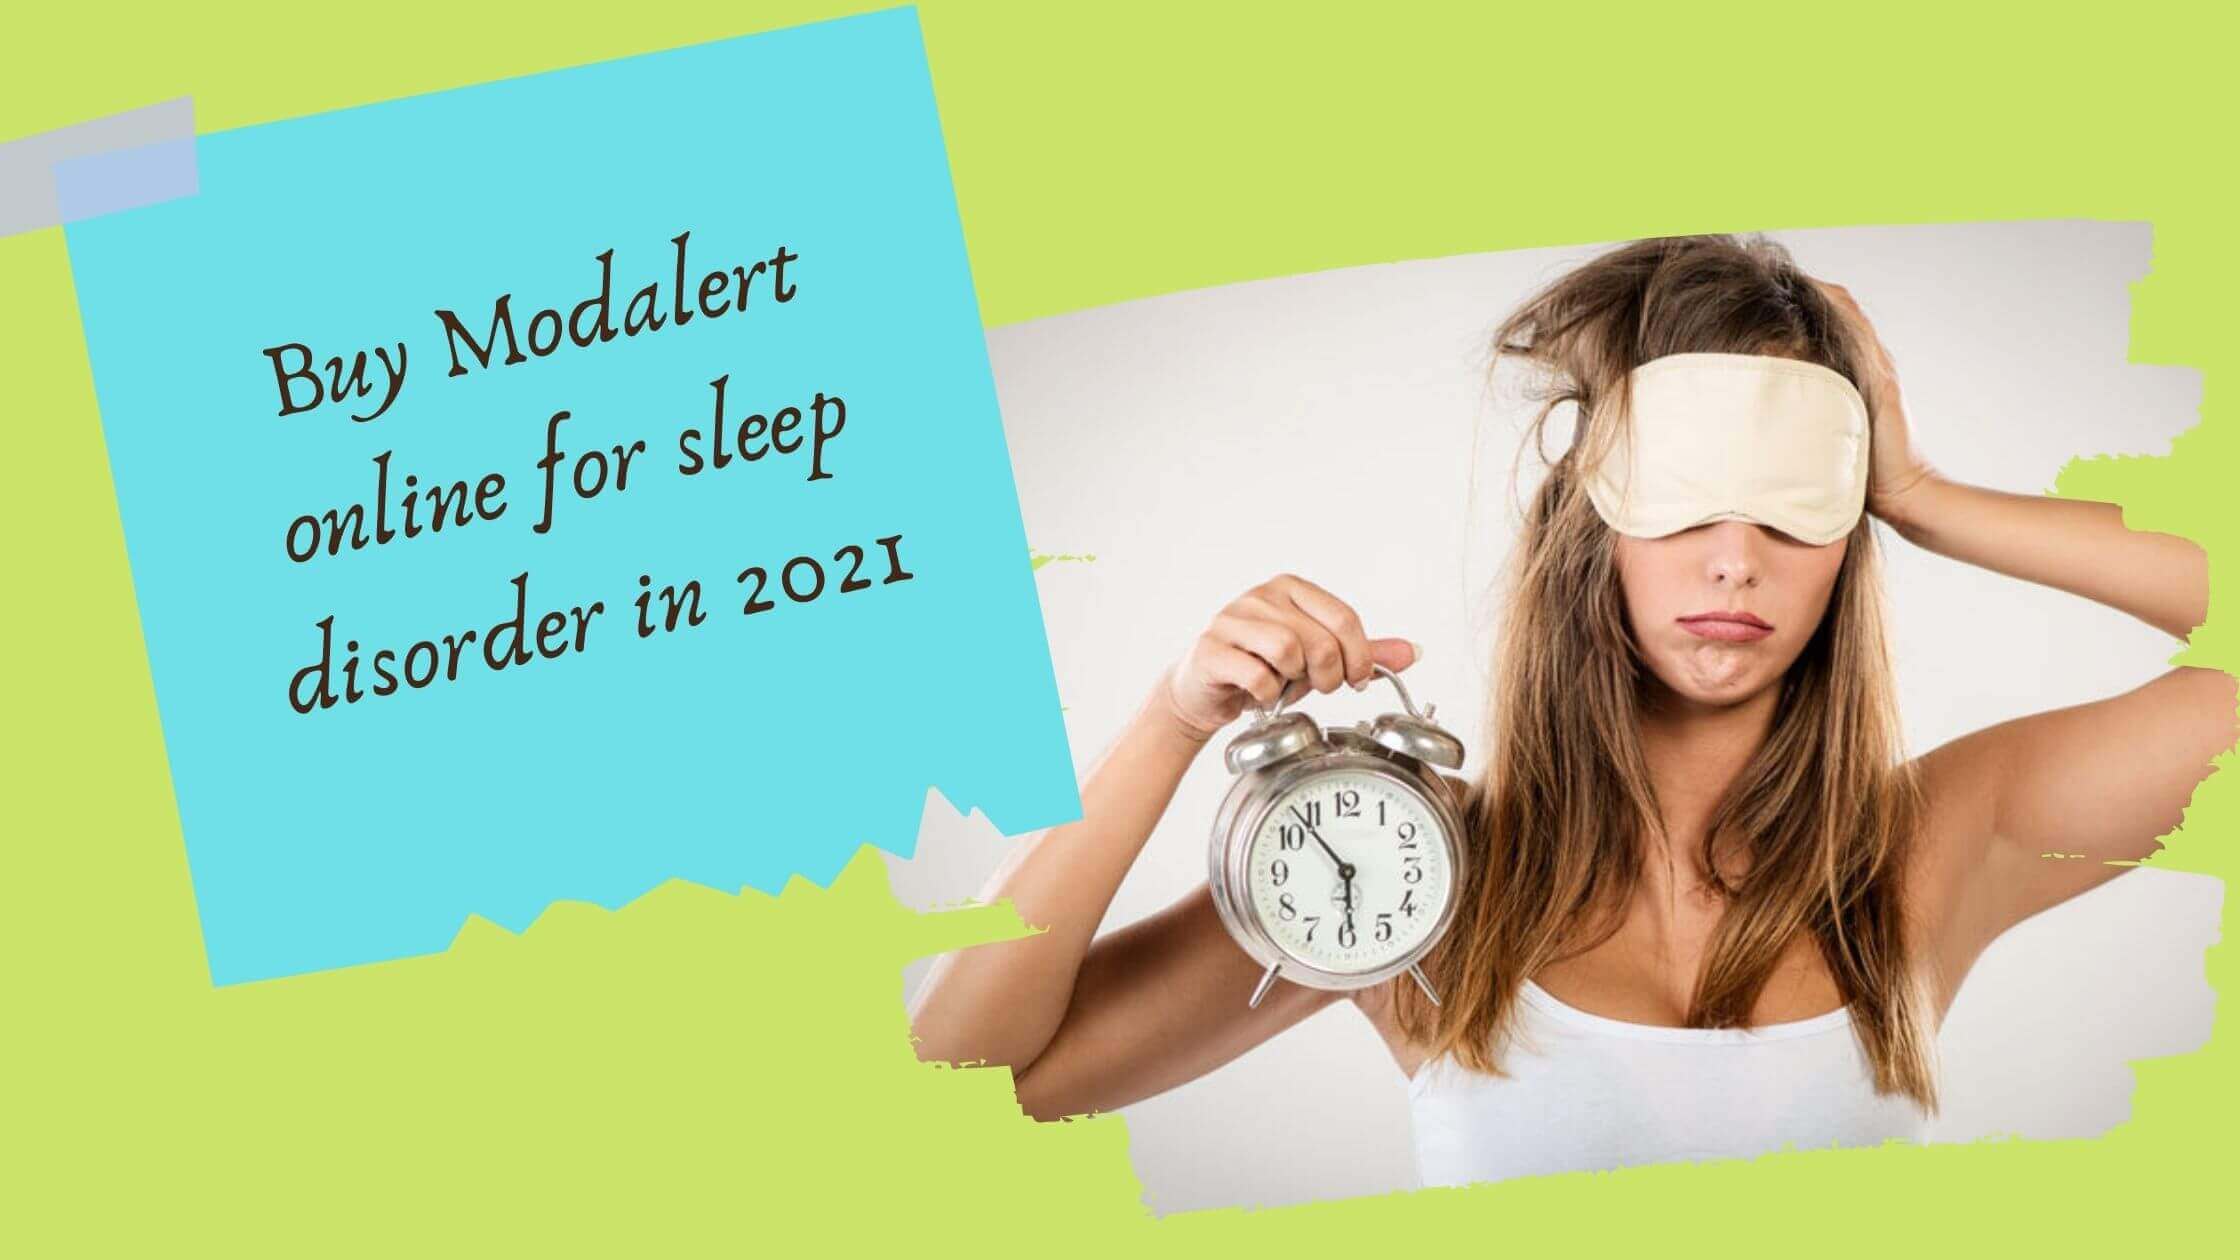 Buy Modalert online for sleep disorder in 2021